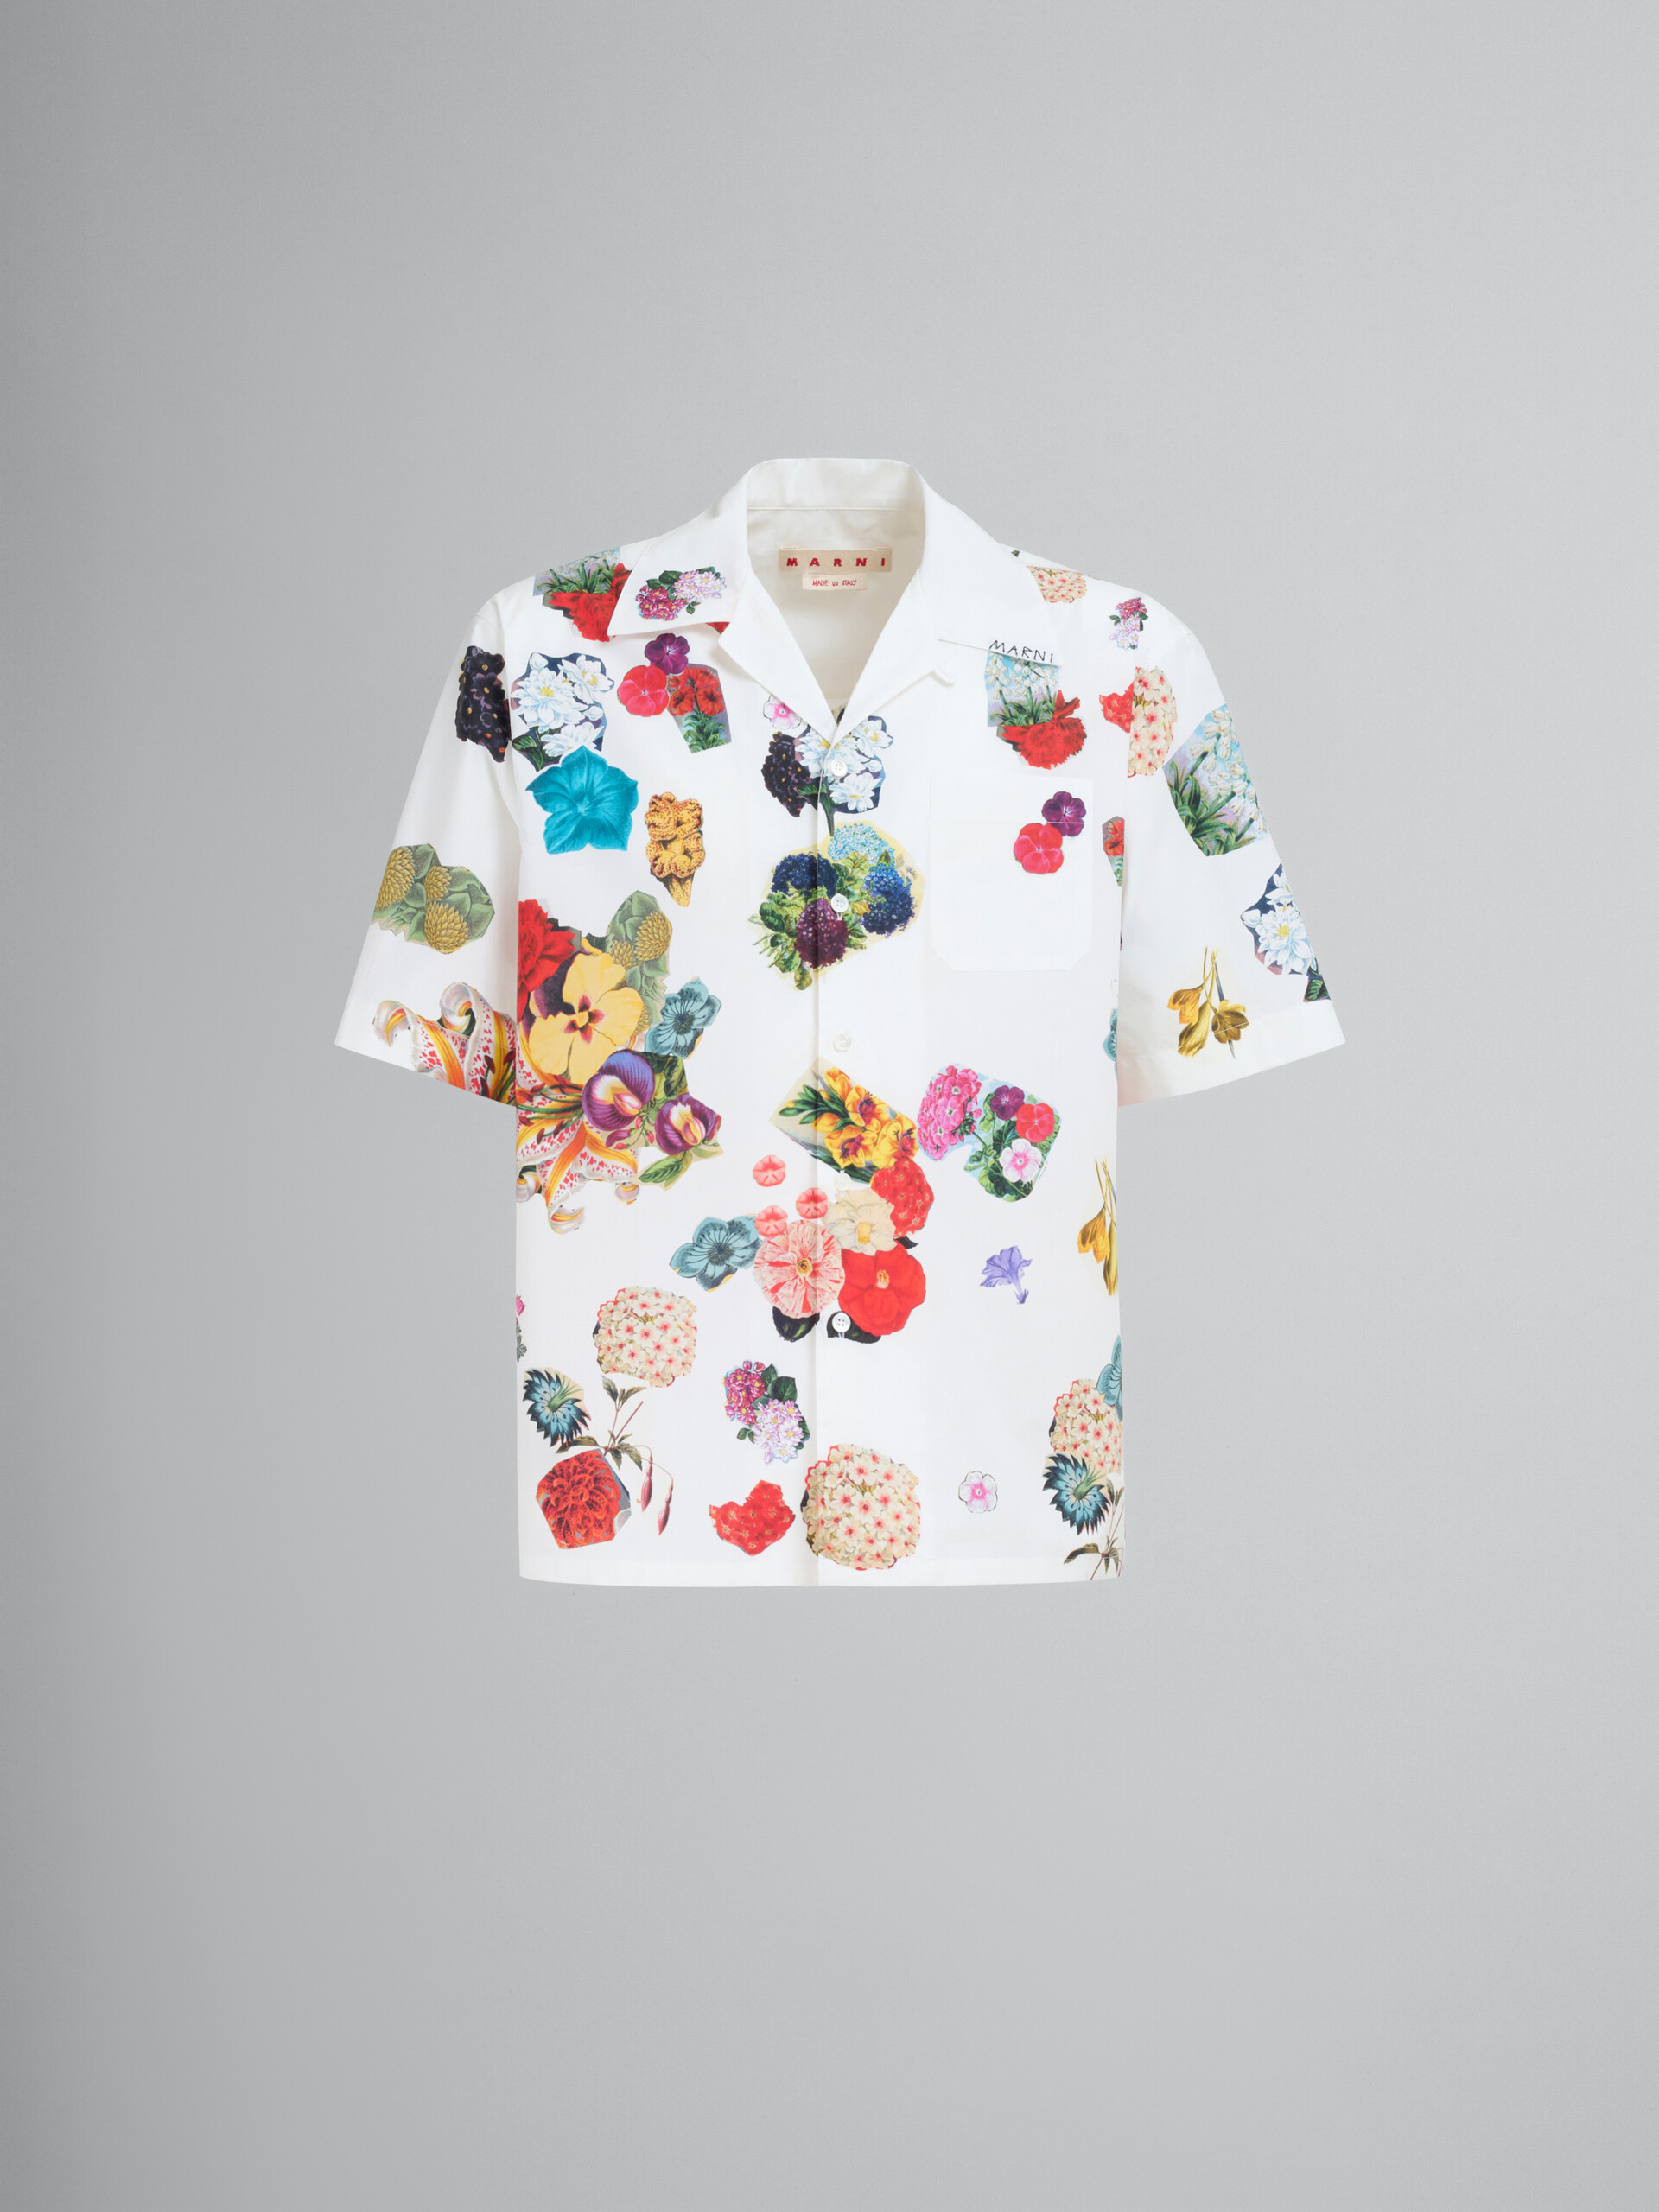 ホワイト ポプリン製ボーリングシャツ、フラワープリント - シャツ - Image 1